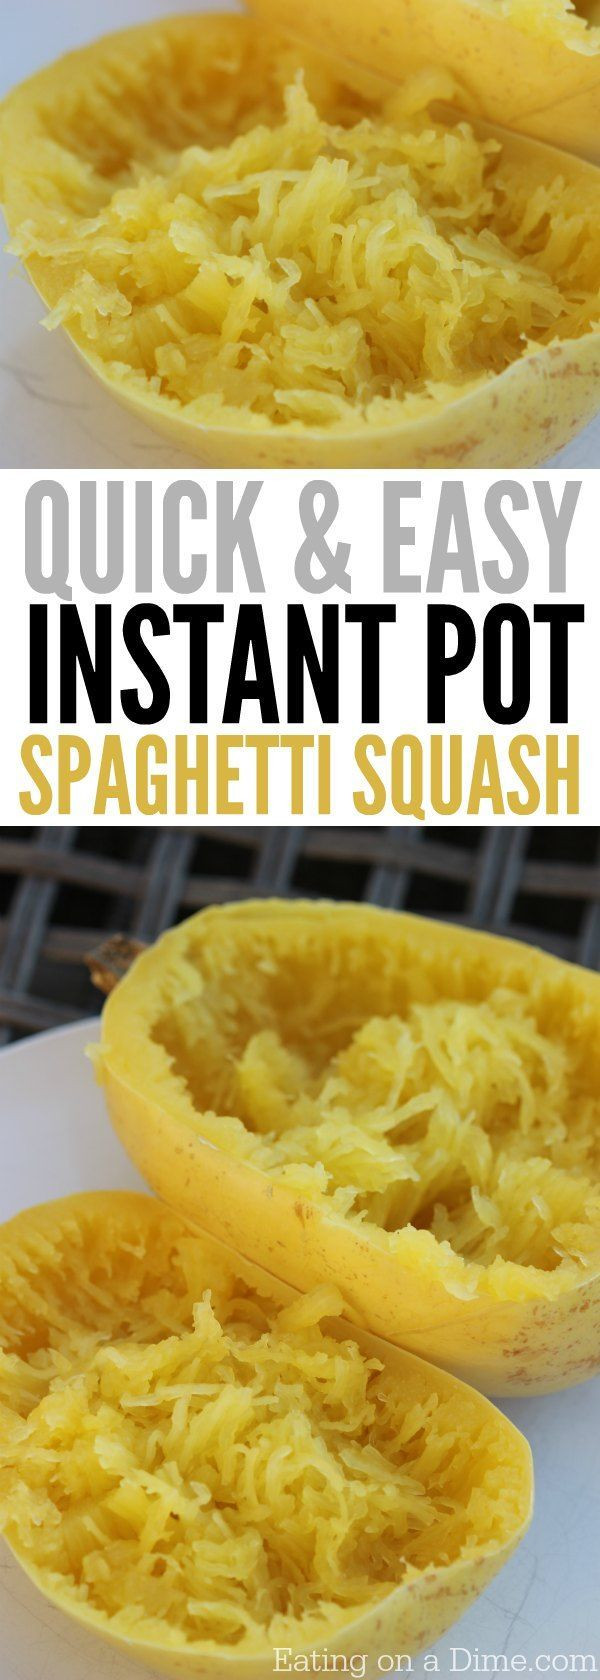 Spaghetti Squash In Pressure Cooker
 Quick and Easy Instant Pot Spaghetti Squash Recipe